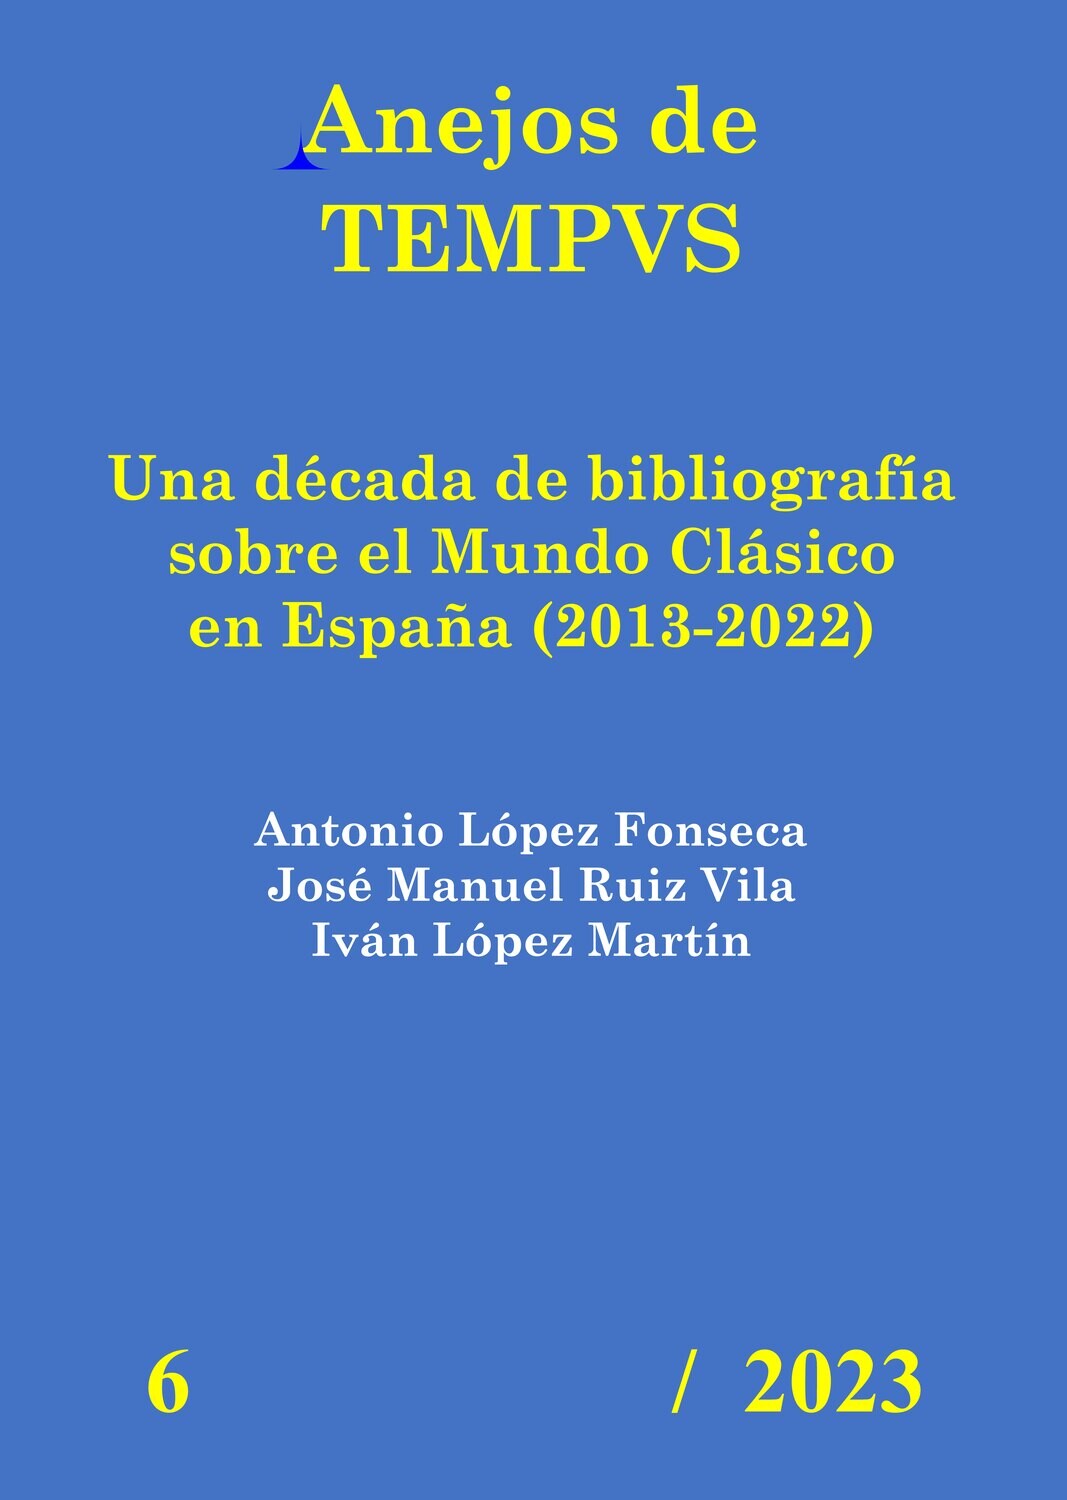 UNA DÉCADA DE BIBLIOGRAFÍA SOBRE EL MUNDO CLÁSICO EN ESPAÑA 2013-2022 (ANEJOS DE TEMPVS Nº 6 / 2023)